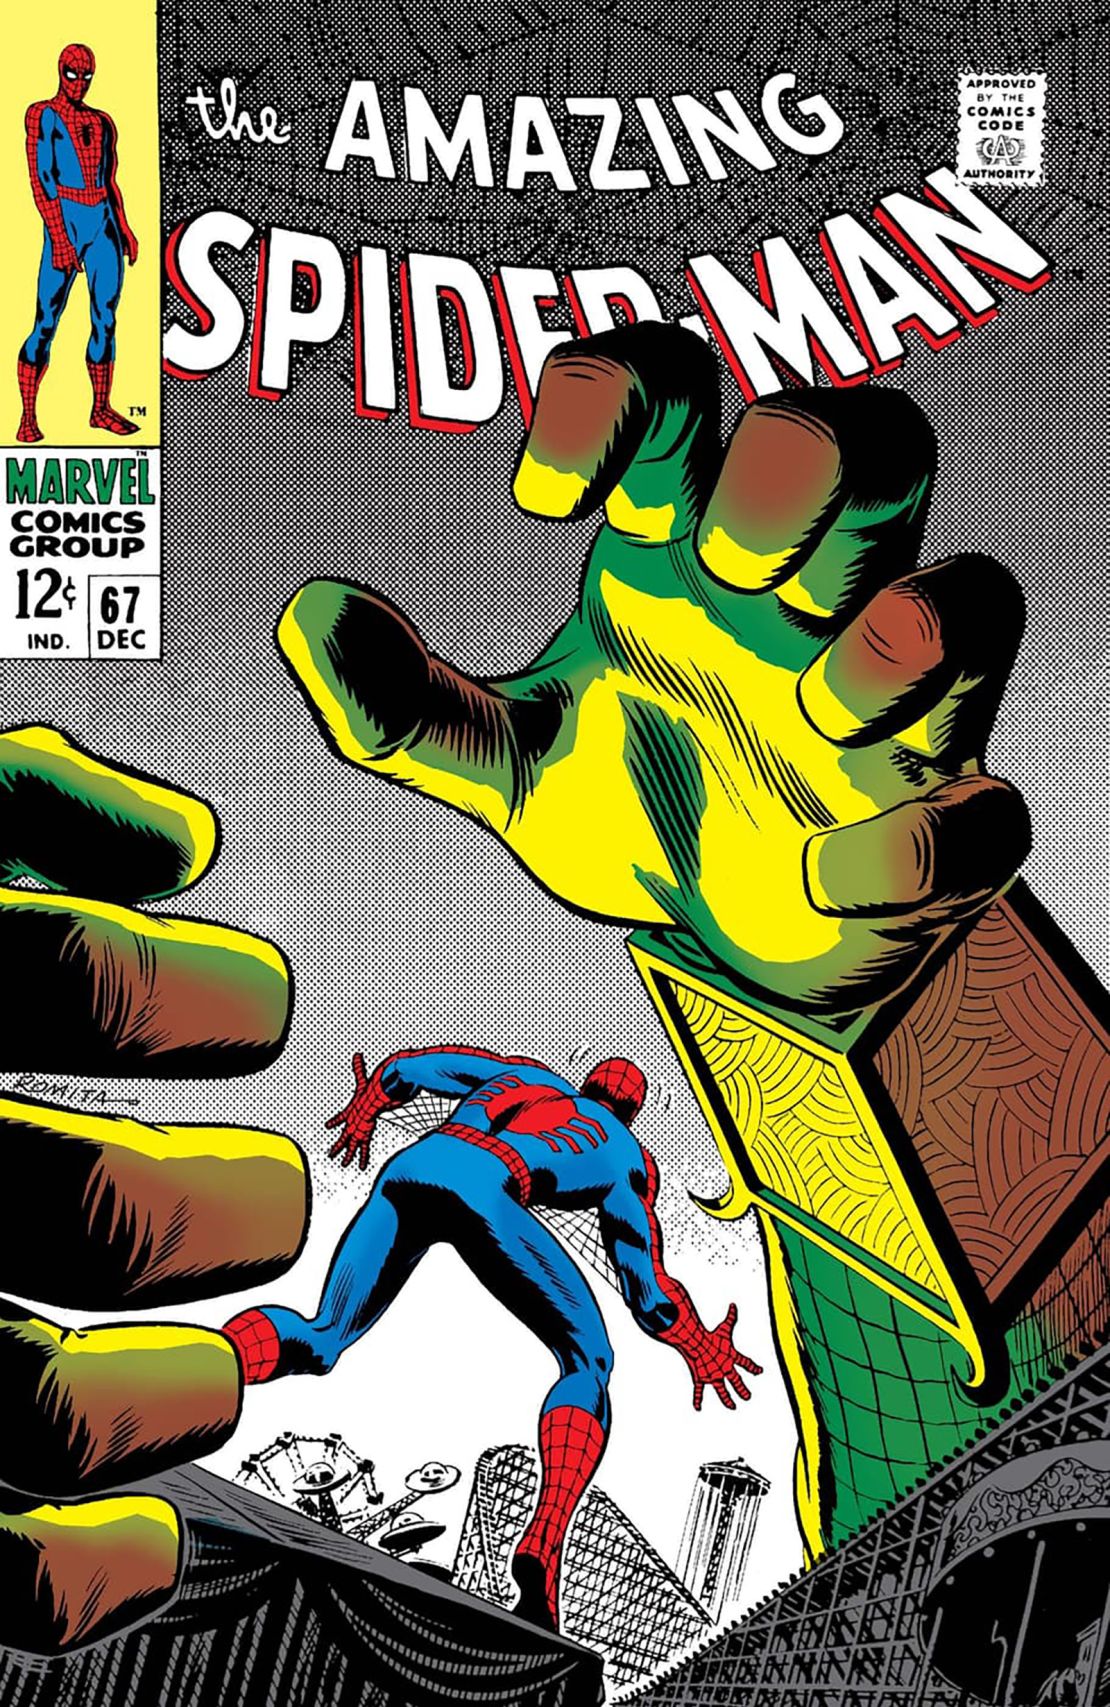 Romita Sr. worked on "The Amazing Spider-Man."